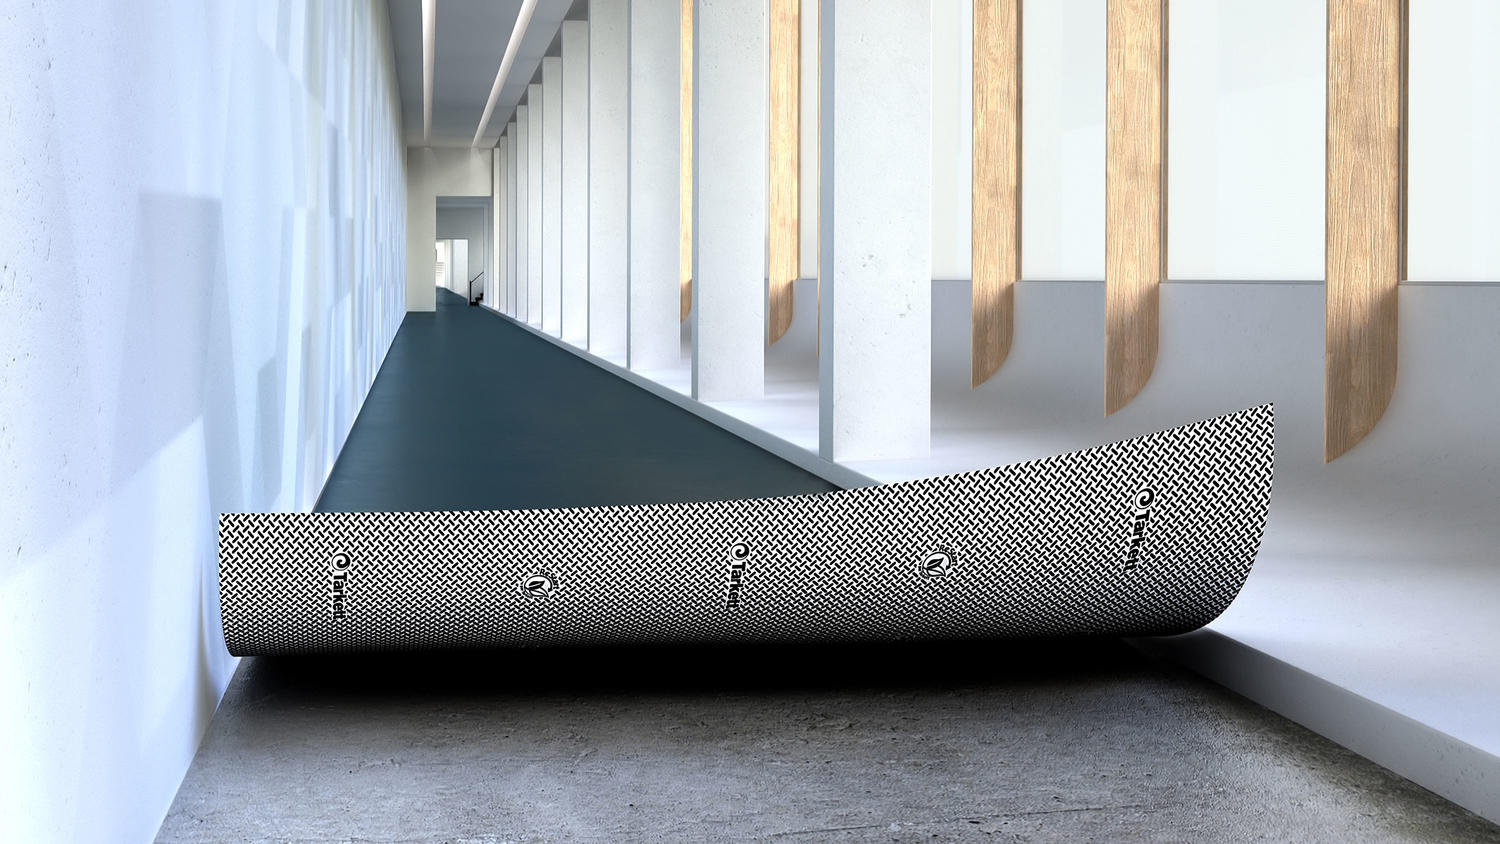 De losliggende Excellence-vloer kan op verschillende ondervloeren worden gelegd en heeft een lage VOS-uitstoot